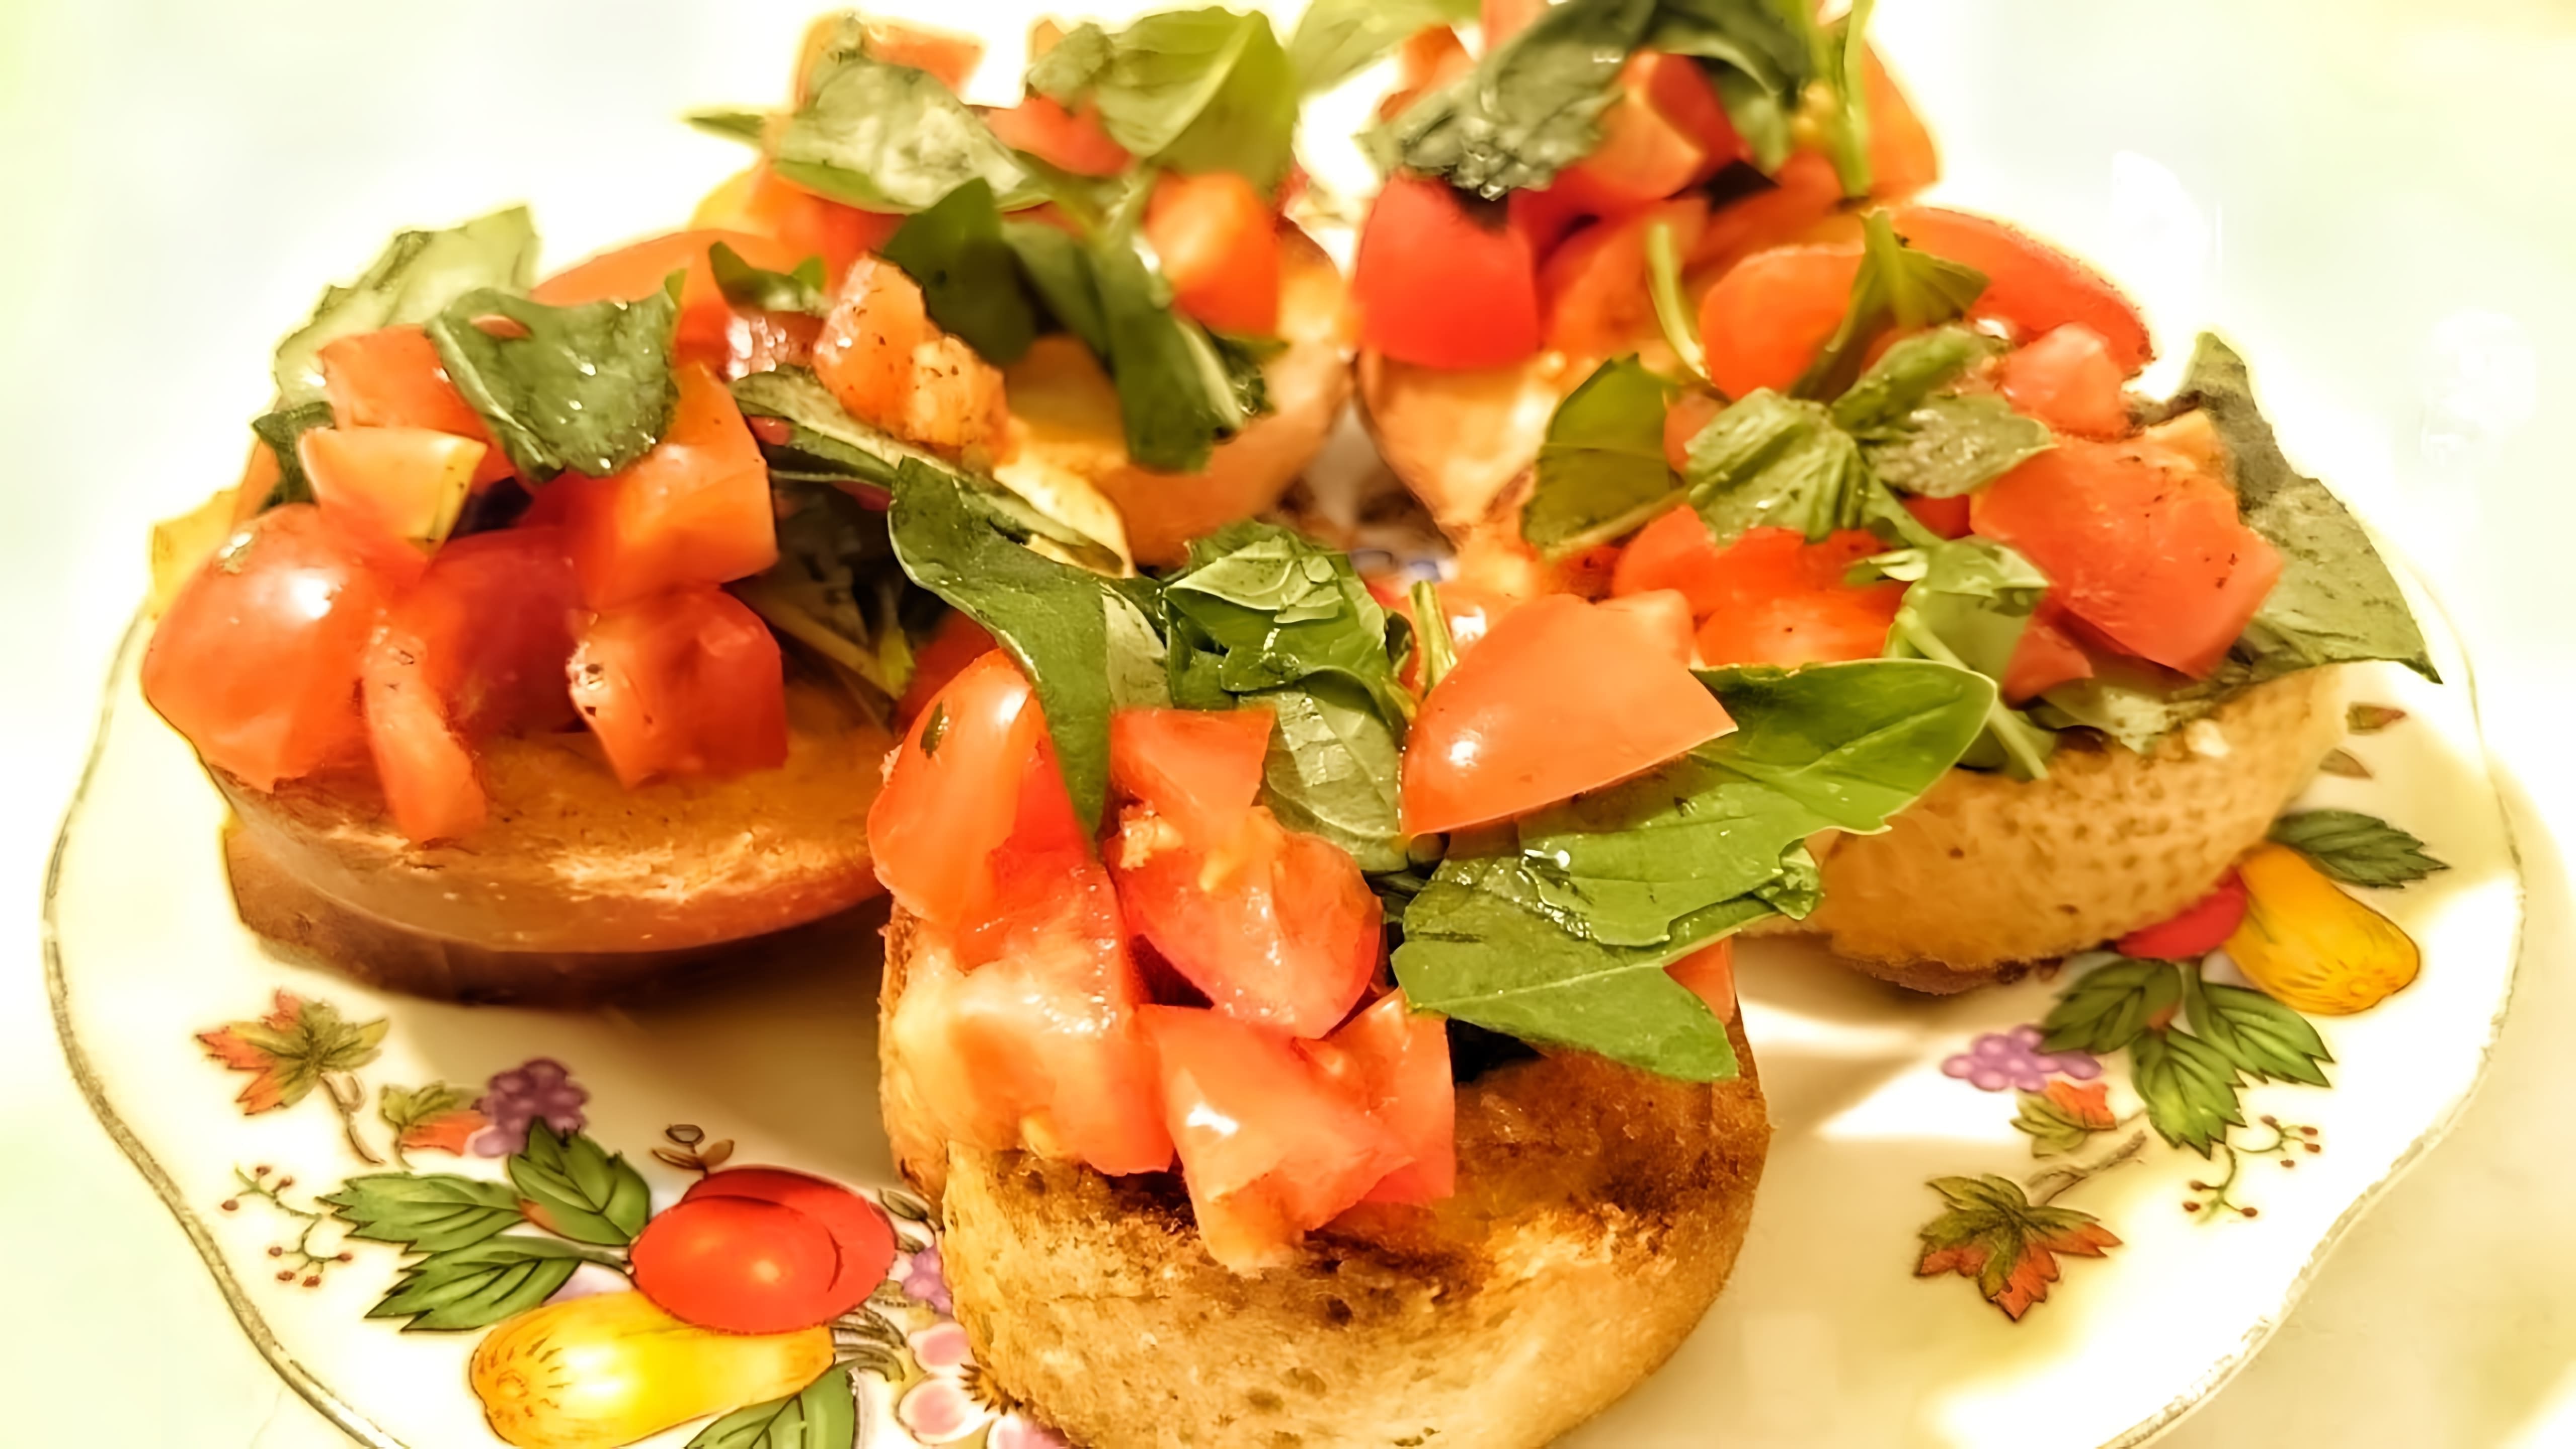 В этом видео демонстрируется процесс приготовления итальянской закуски - брускетты с помидорами